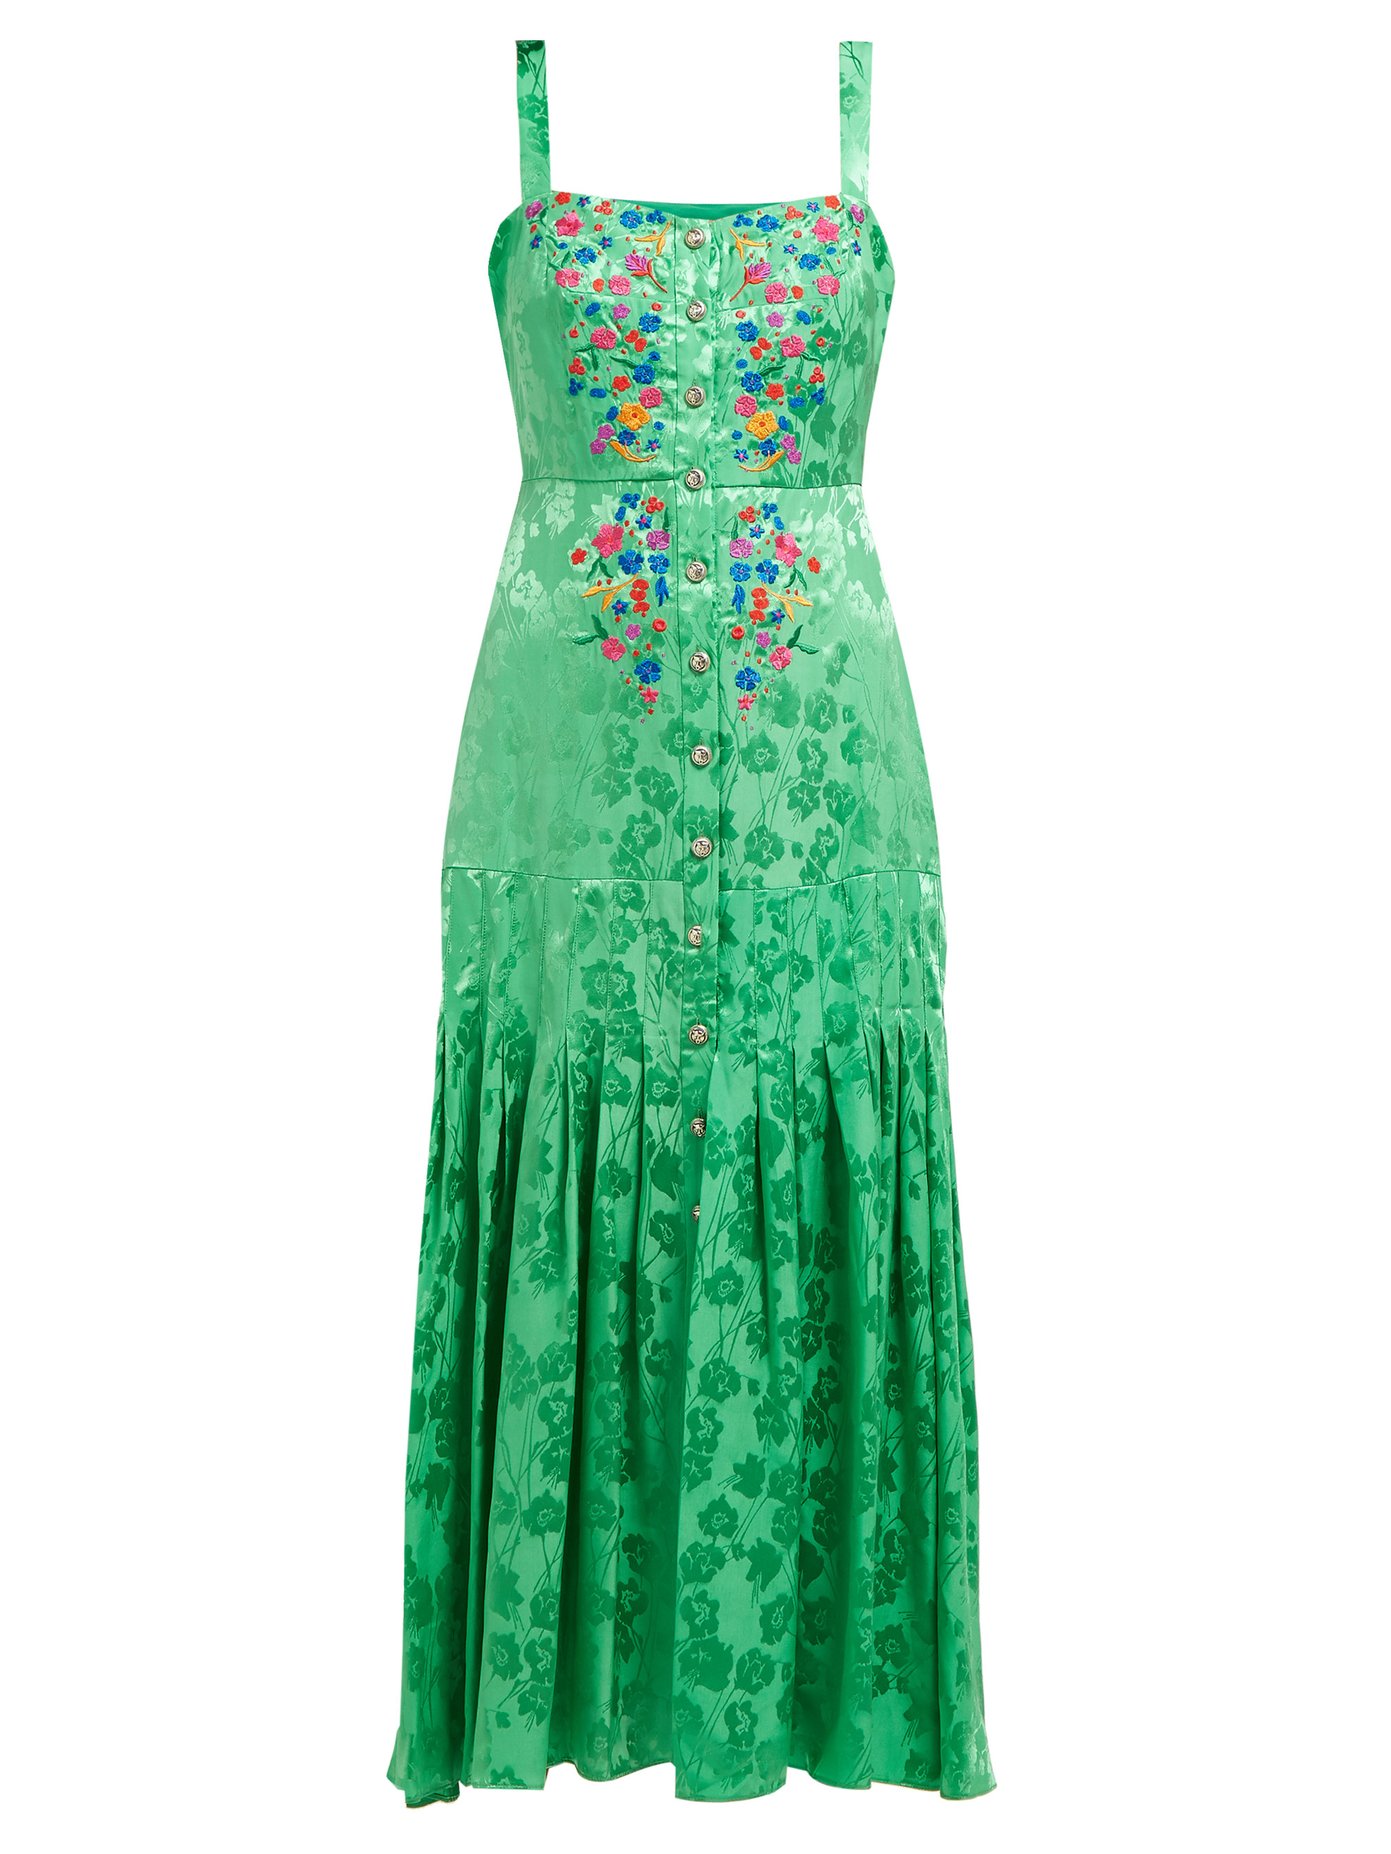 saloni green dress